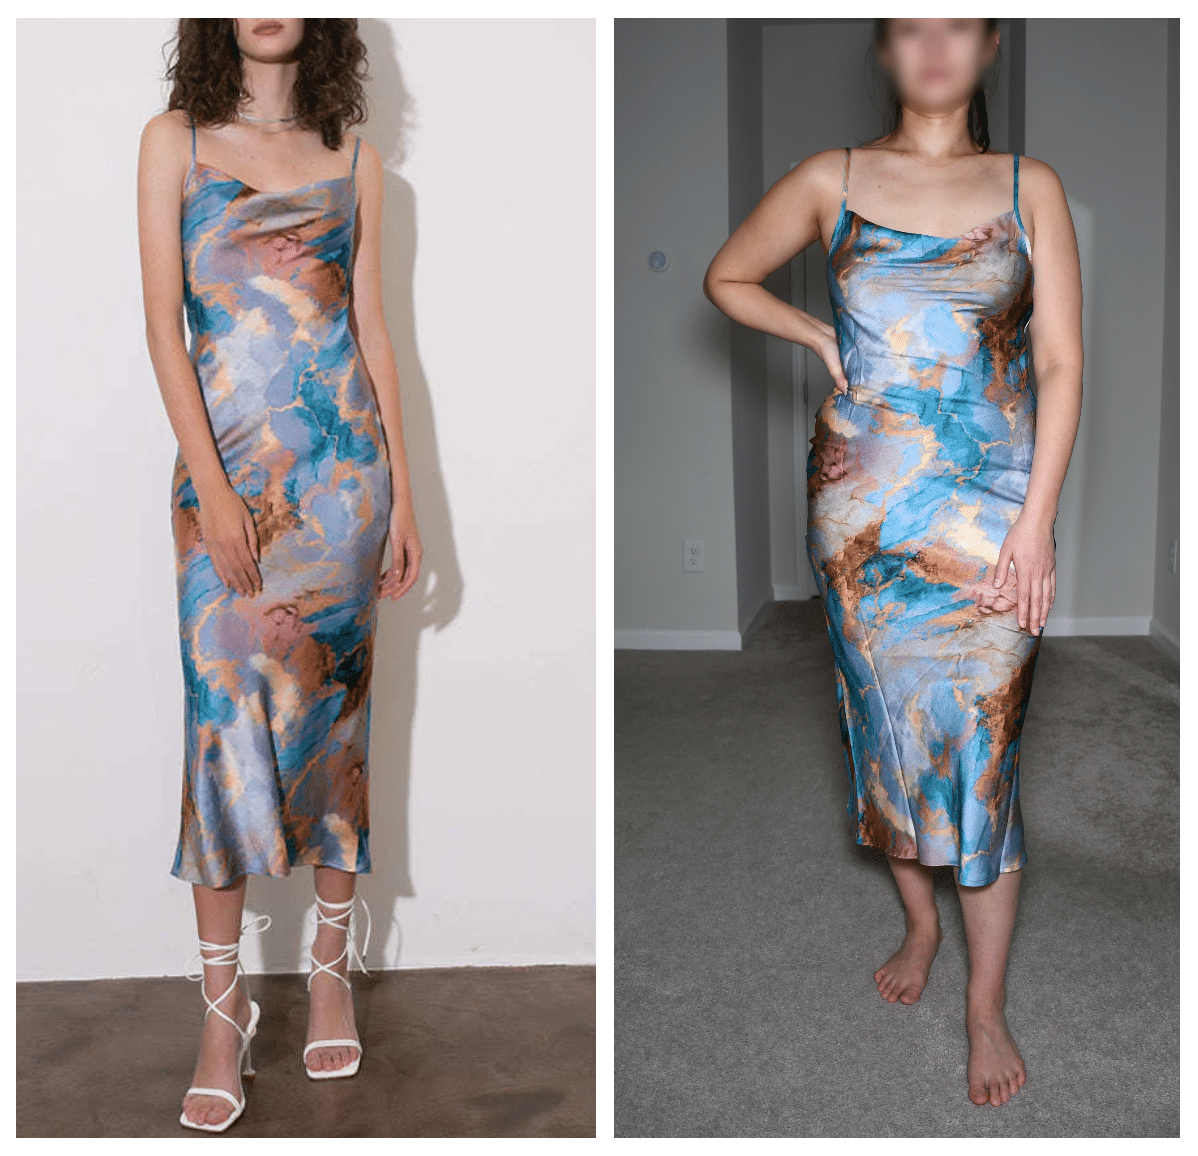 micas slip dress comparison